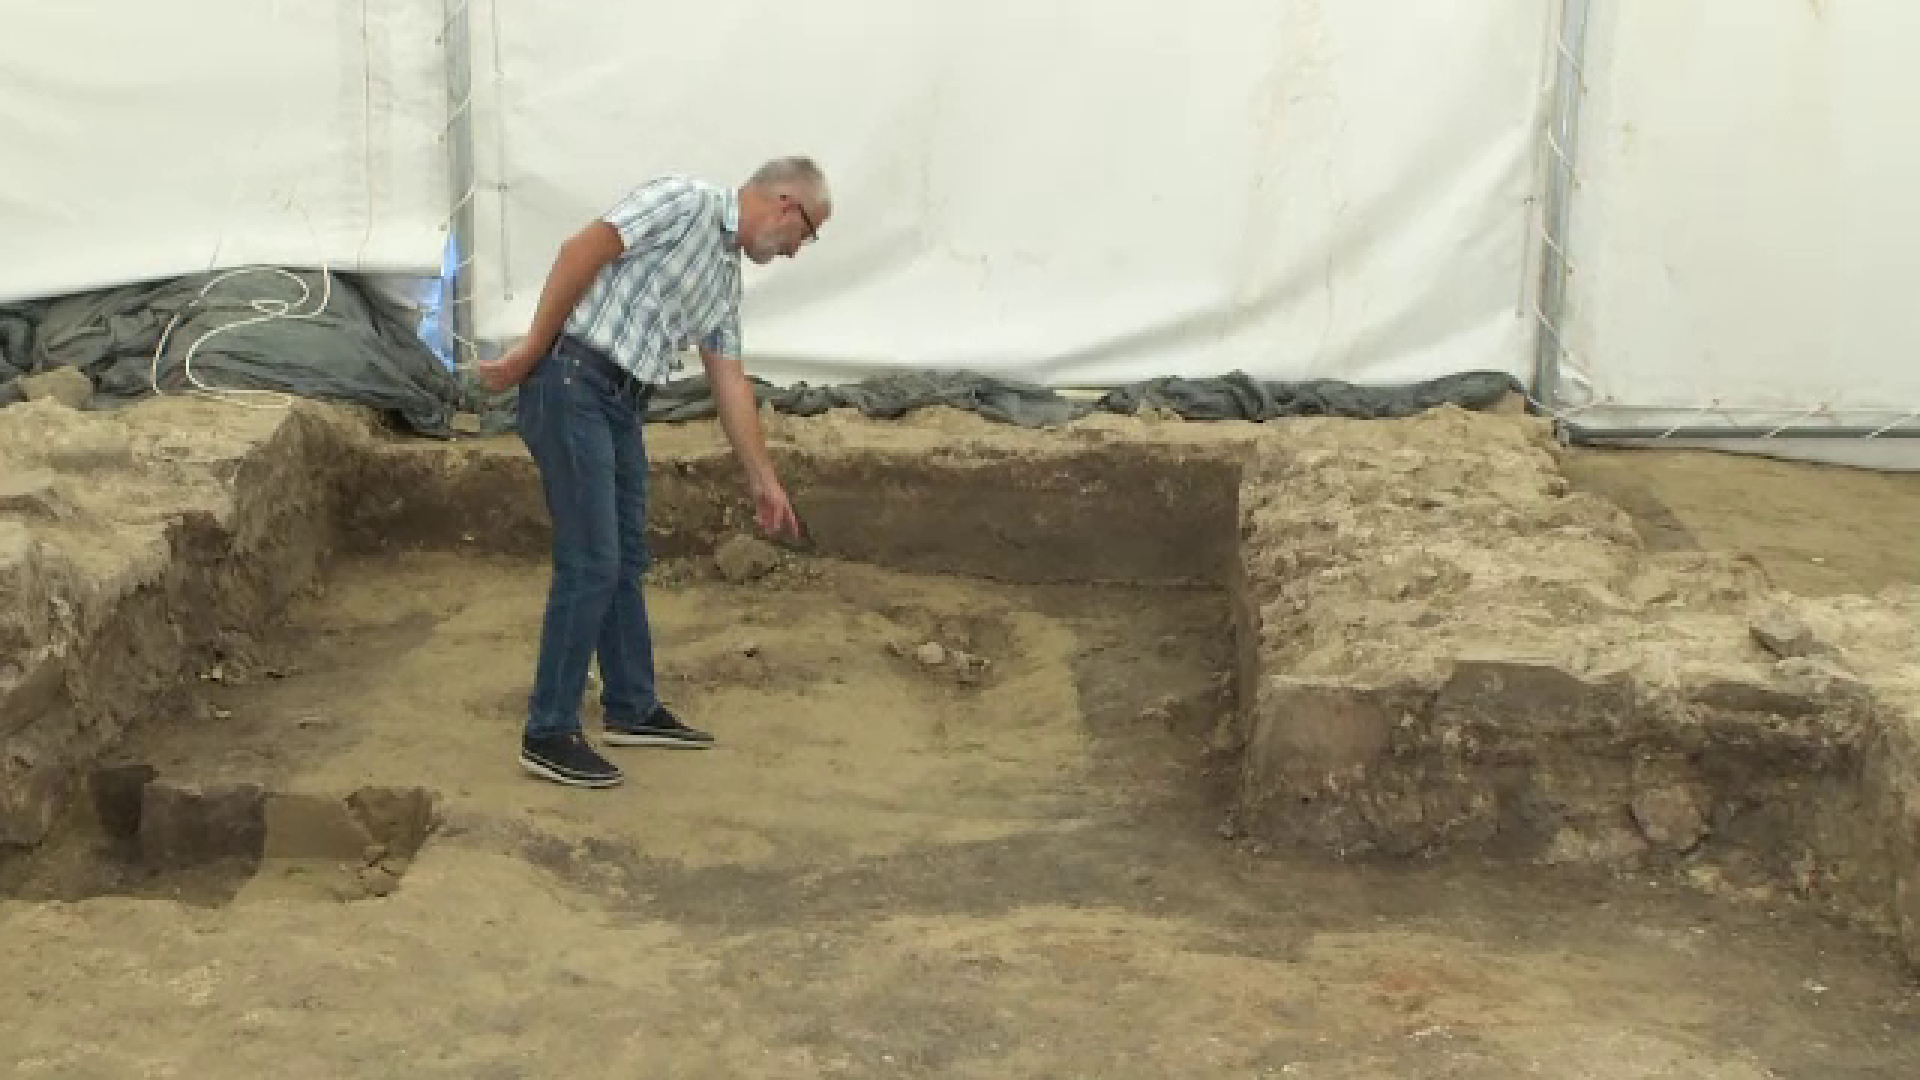 descoperire arheologică Galați